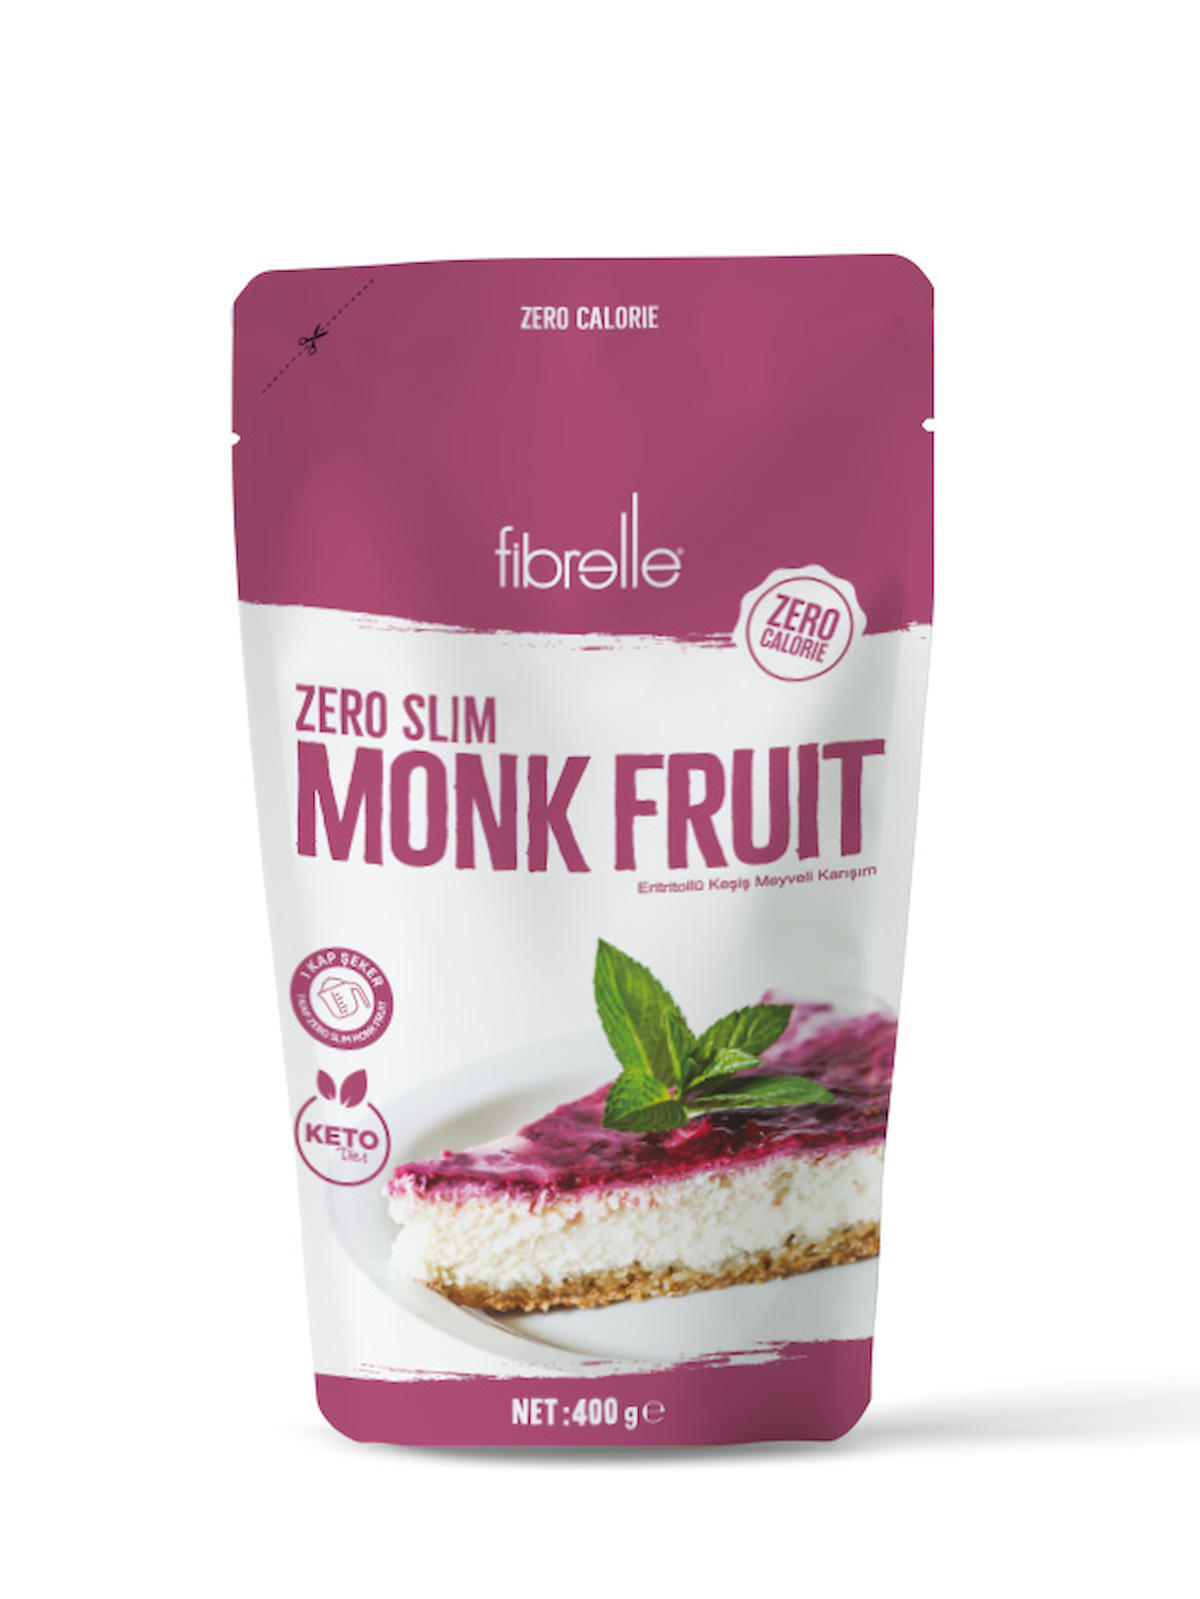 Fibrelle Zero Slim Monk Fruit 400 g 1 paket. Keto / Ketojenik diyete uygundur. FİBMONK40